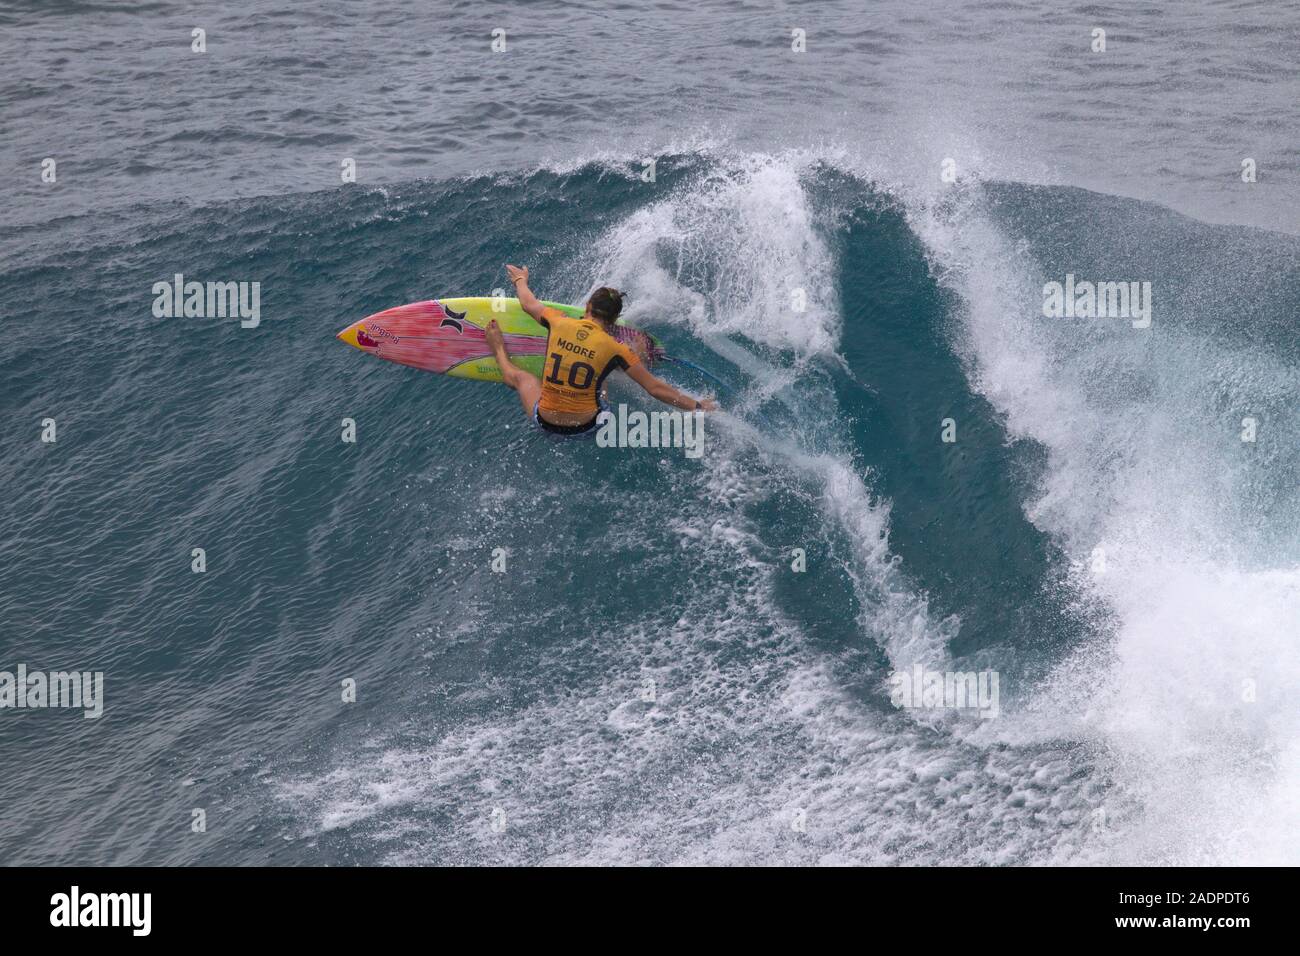 Carissa Moore remportant le titre 2019 Women's surf at the Maui Pro Surfer sur la concurrence. Banque D'Images